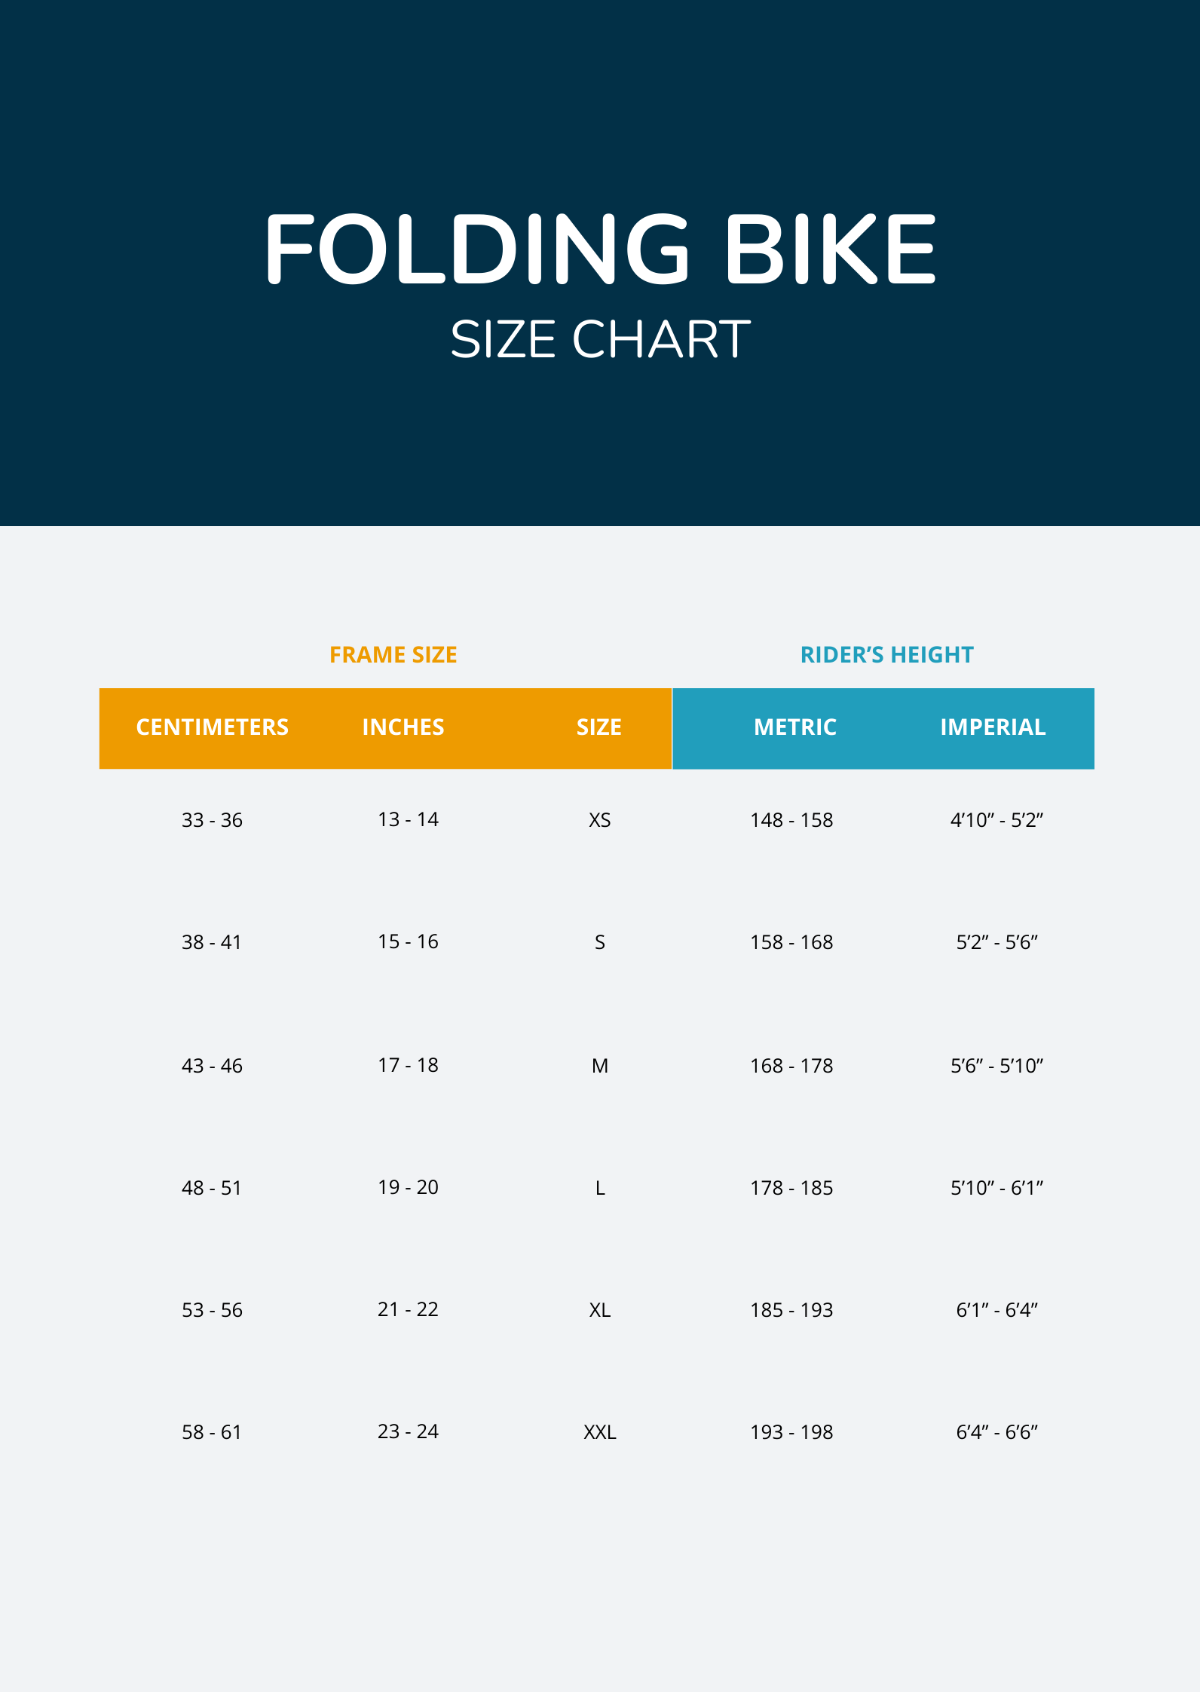 Folding Bike Size Chart Template